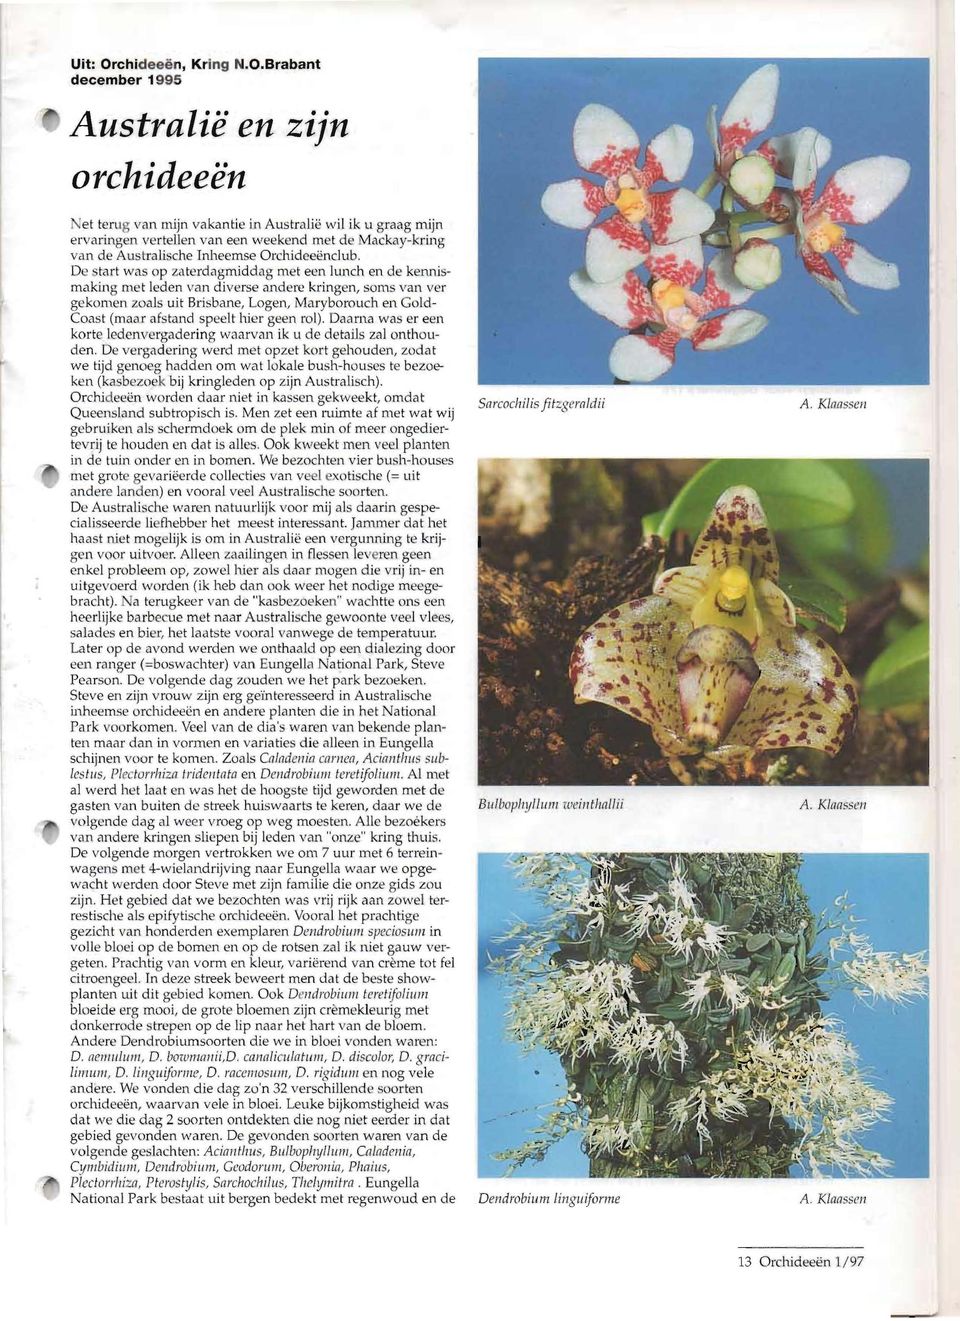 Brabant december 1995 AustralicO en zijn orchideecon et terug van mijn va kantie in Australie wil ik u graag mijn ervaringen vertellen van een weekend met de Mackay-kring van de Au trali ~c he